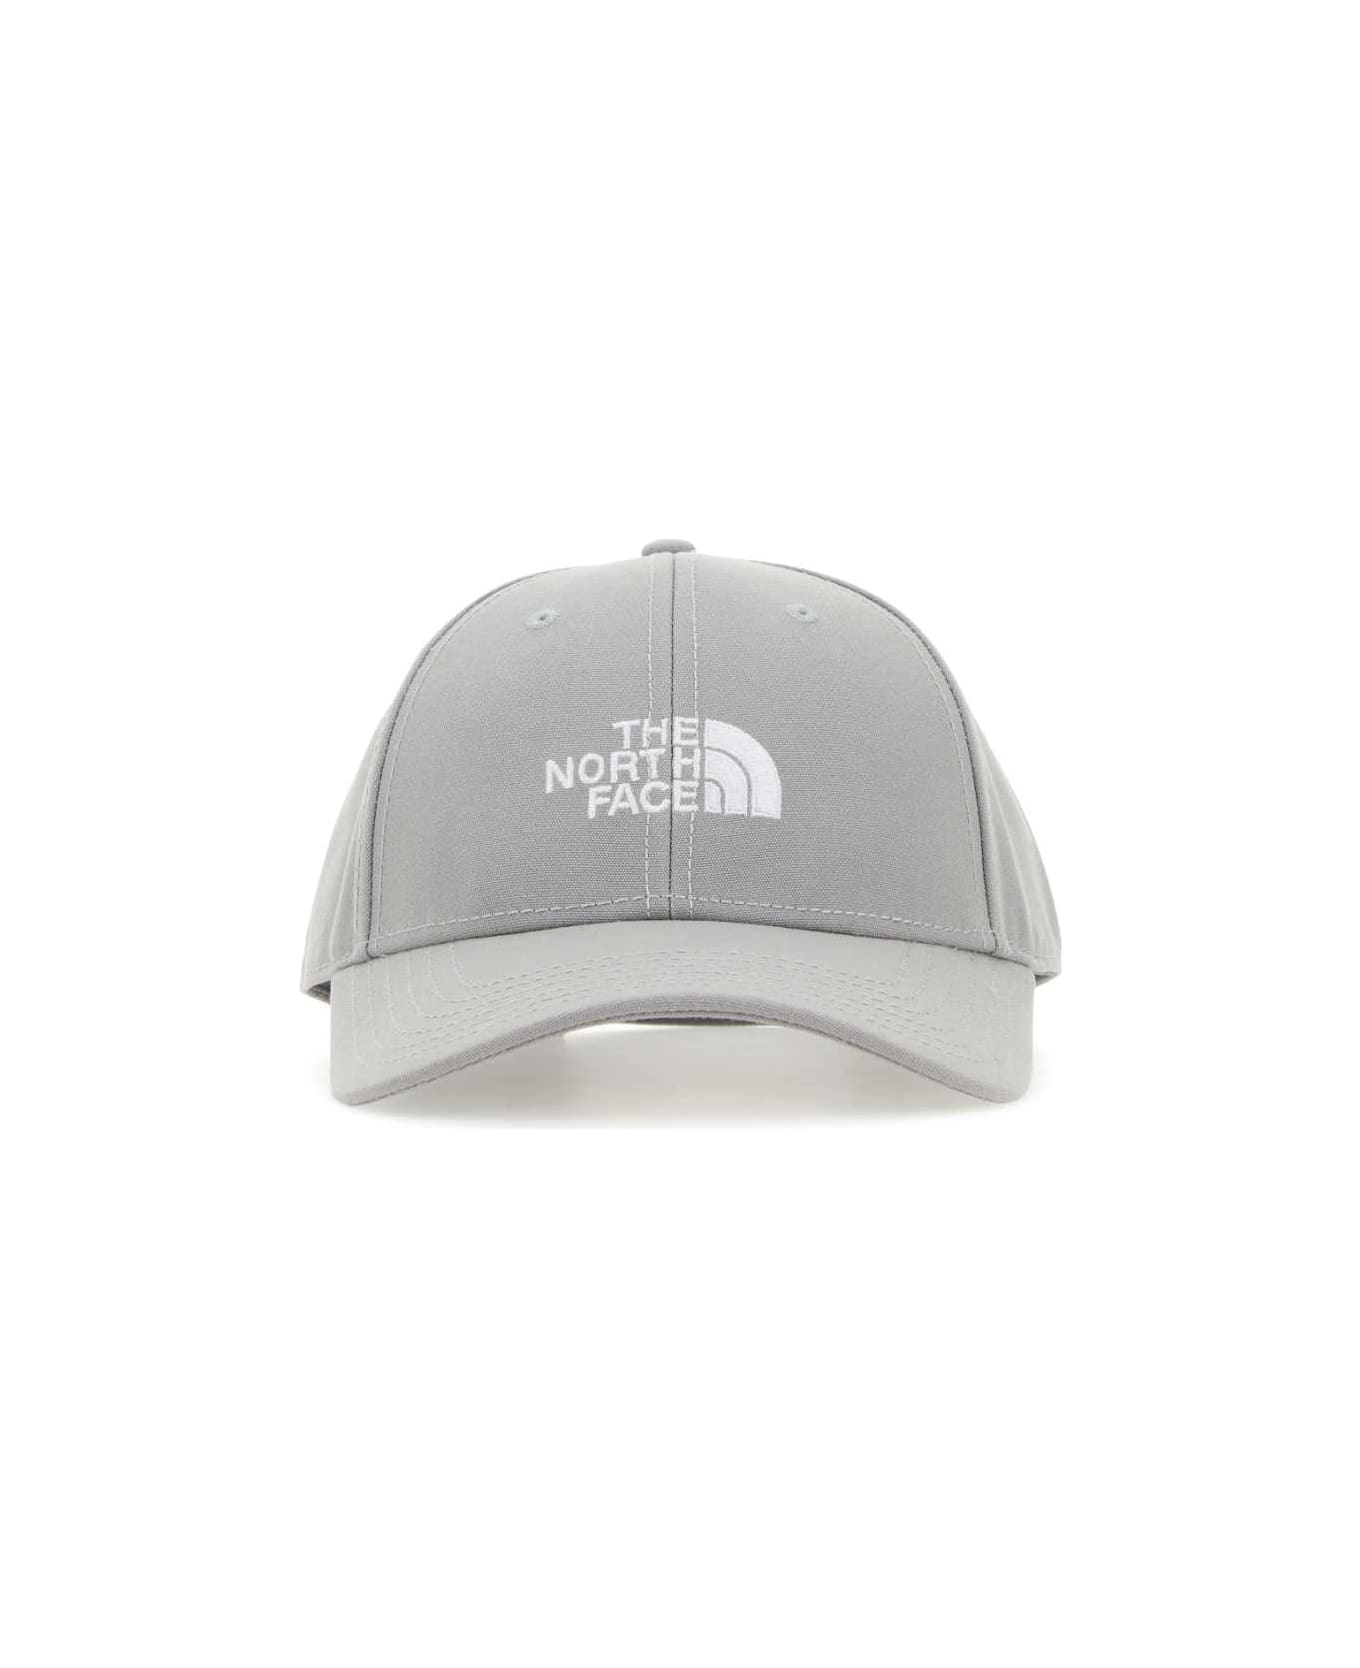 The North Face Grey Polyester Baseball Cap - MELD GREY 帽子